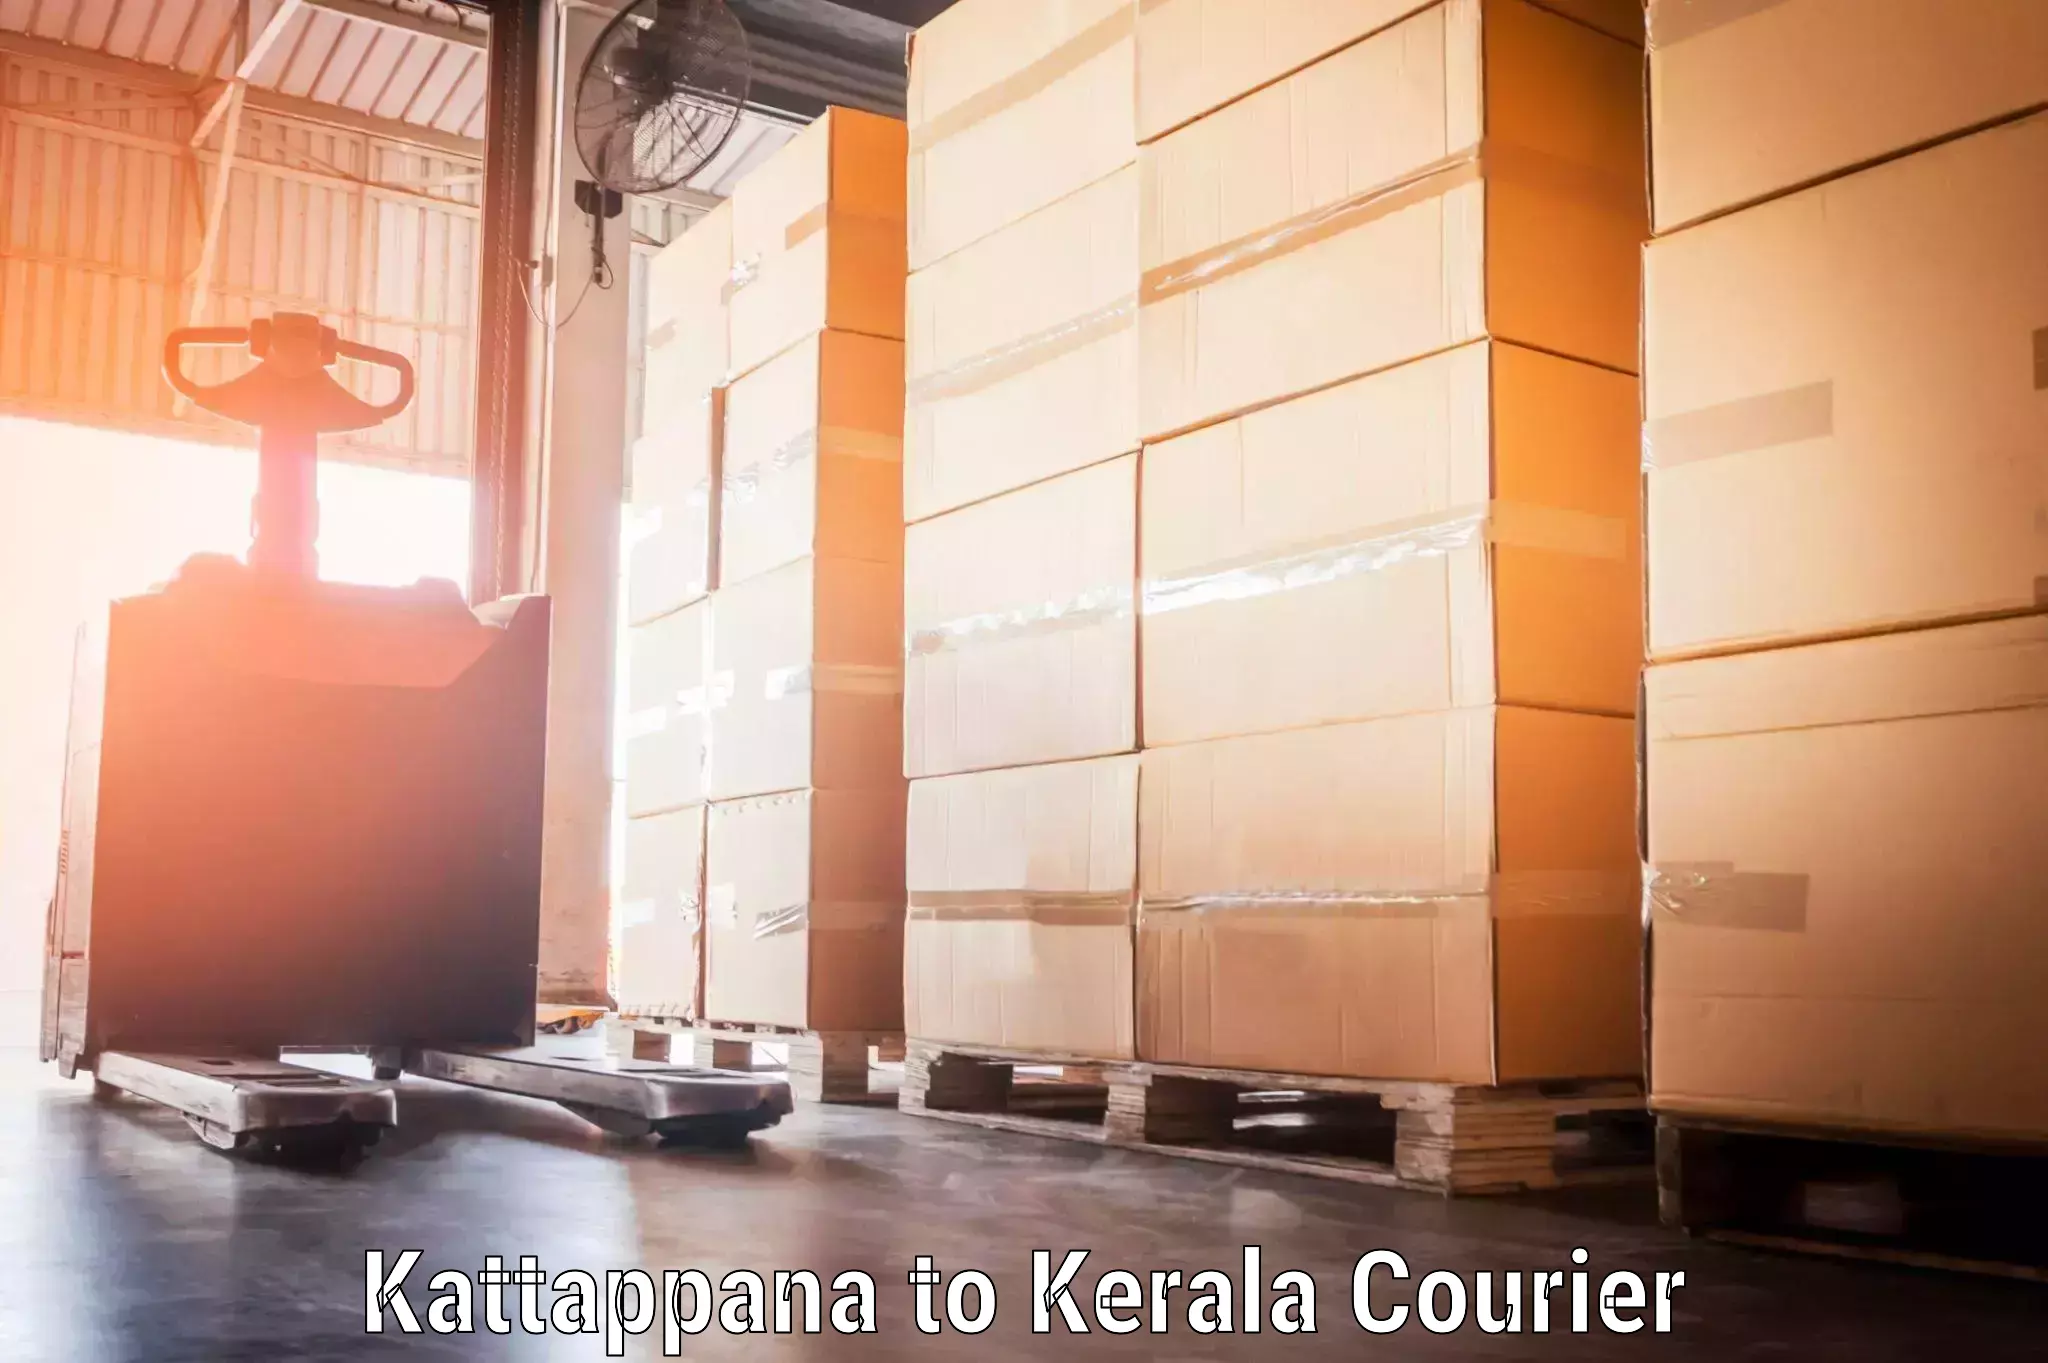 Excess baggage transport in Kattappana to Irinjalakuda